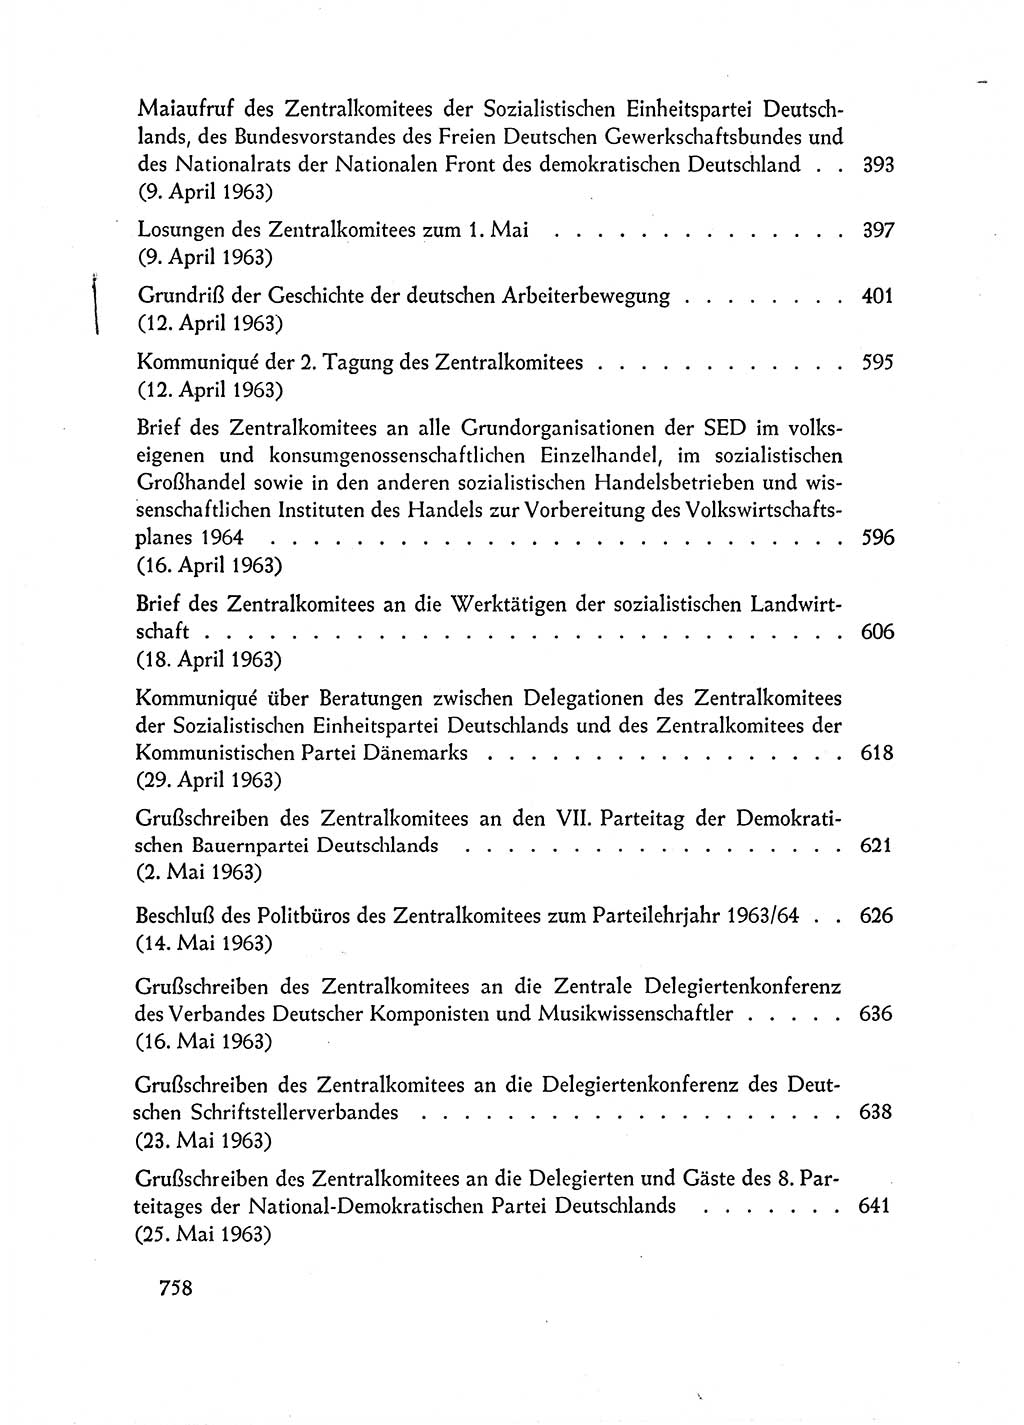 Dokumente der Sozialistischen Einheitspartei Deutschlands (SED) [Deutsche Demokratische Republik (DDR)] 1962-1963, Seite 758 (Dok. SED DDR 1962-1963, S. 758)